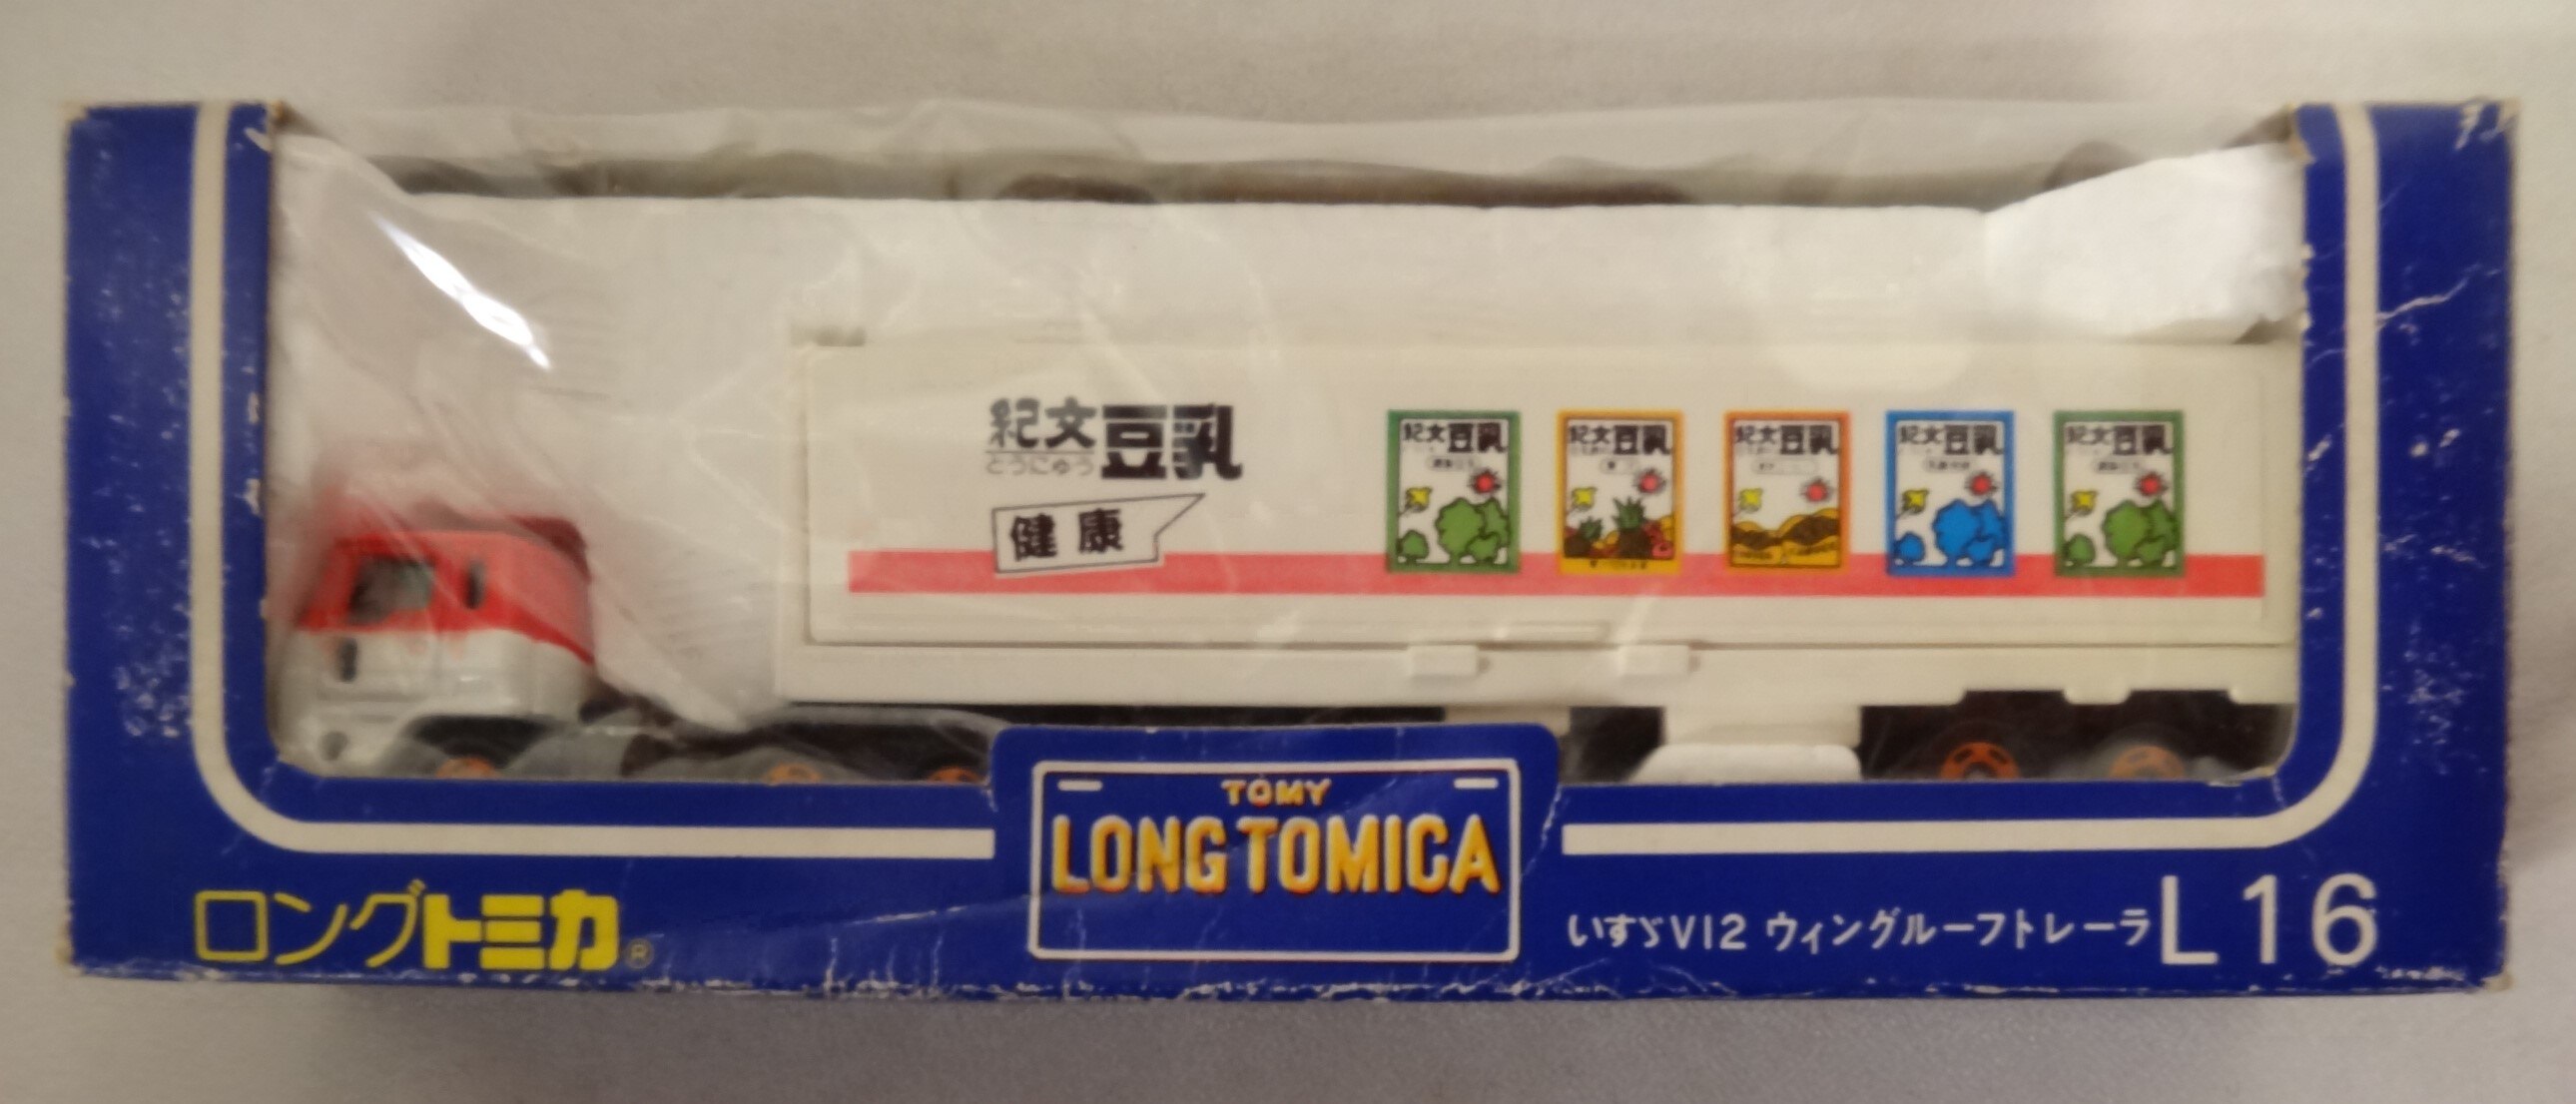 ロングトミカ L16 いすゞV12 ウィングルーフトレーラー 魅了 feeds